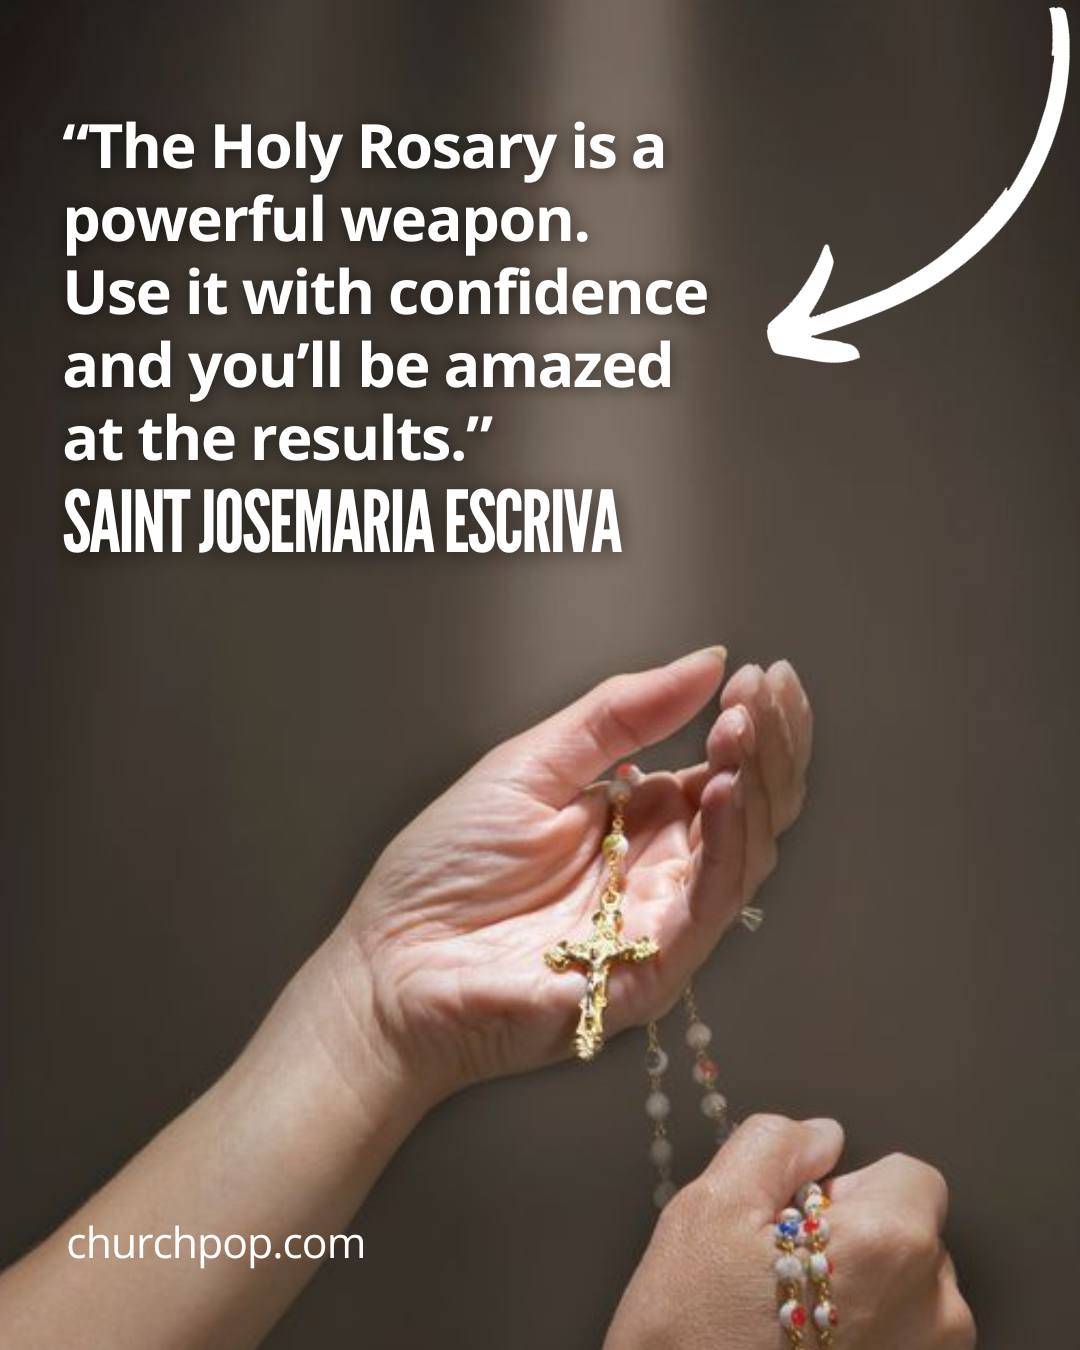 rosary prayers, rosary how to pray, rosary how to, rosary and prayers, rosary wednesday